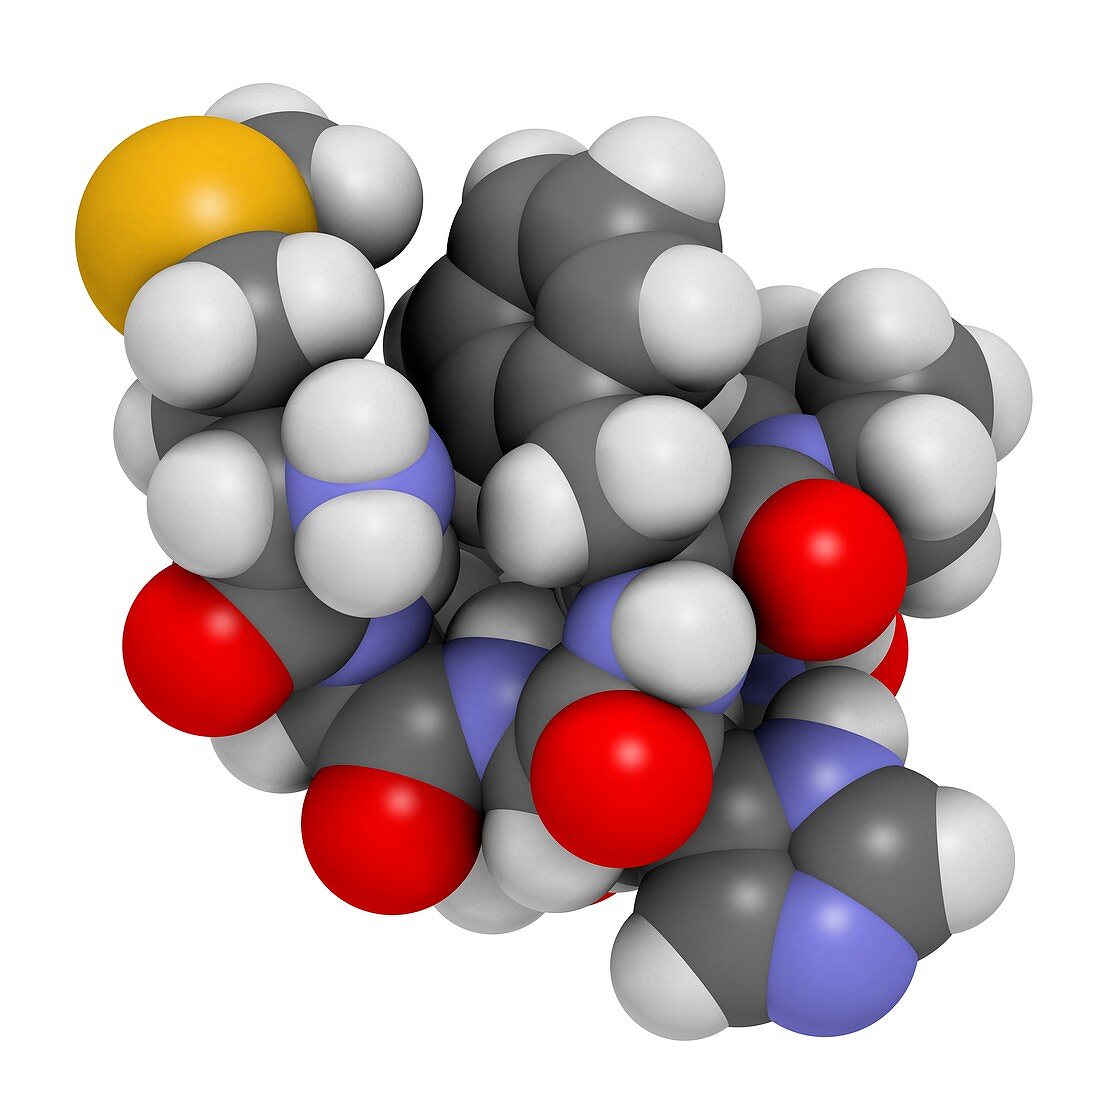 Semax peptide drug molecule